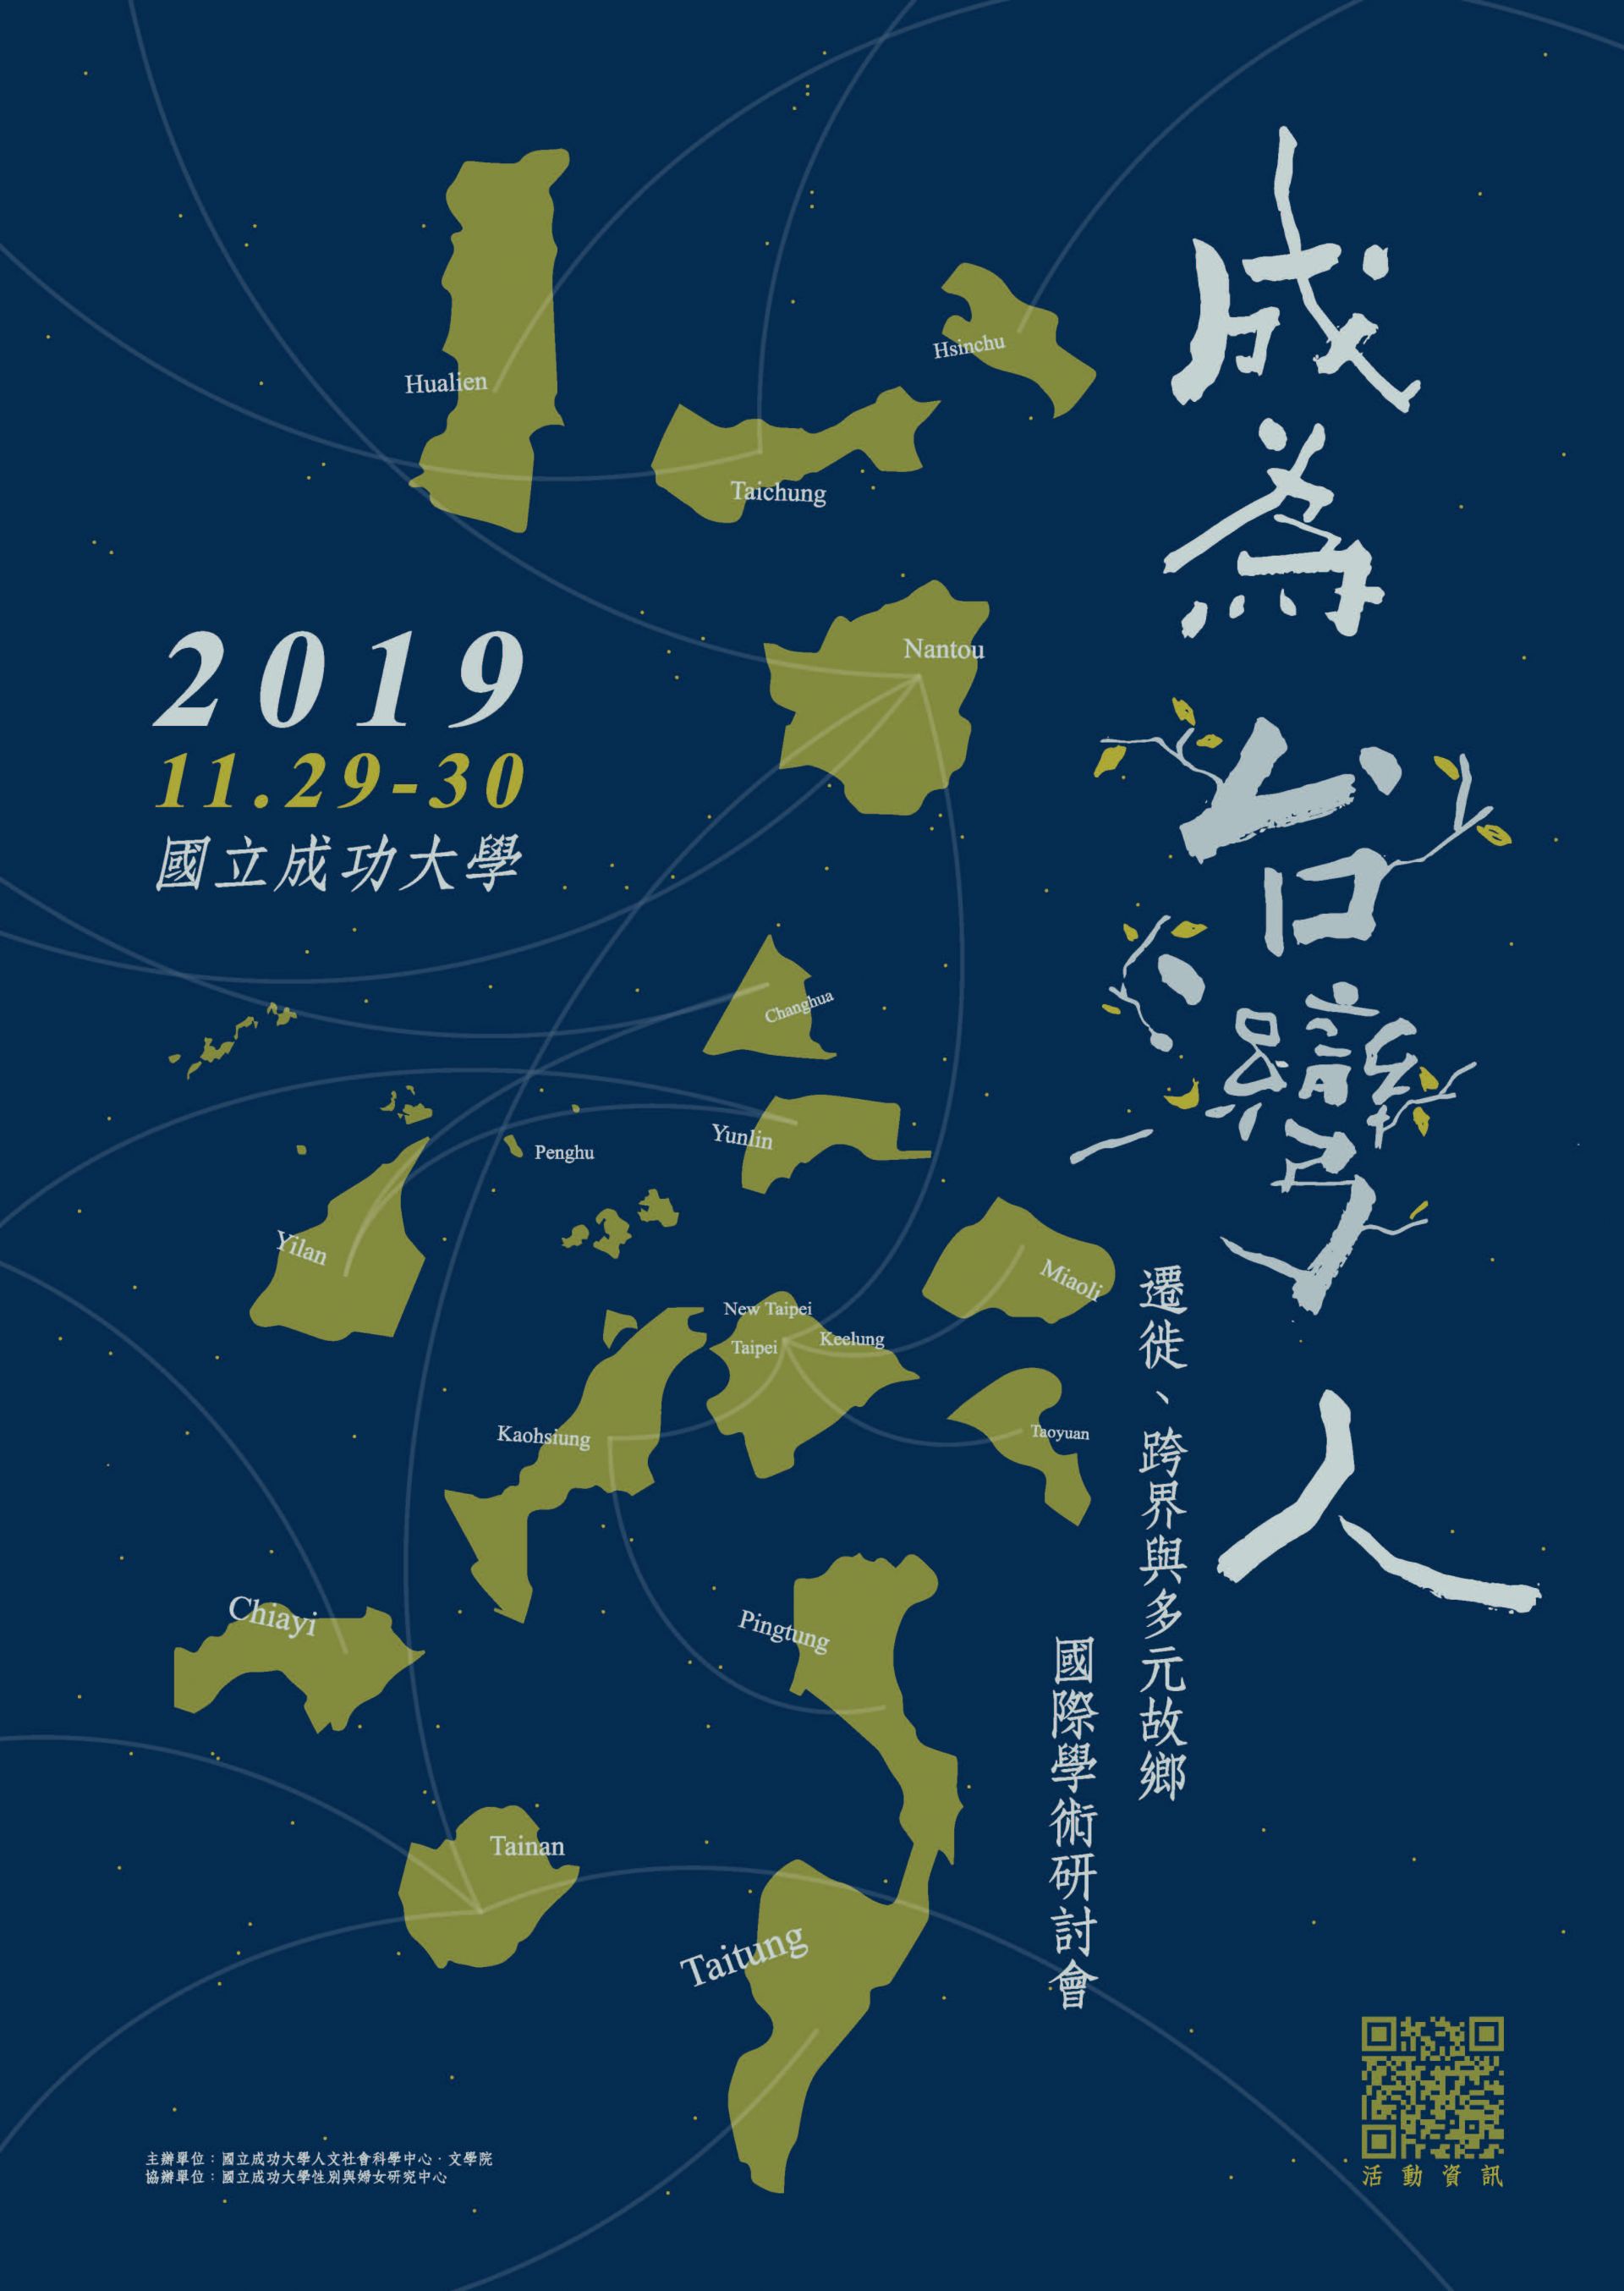 「成為臺灣人 : 遷徙、跨界與多元故鄉」國際學術研討會